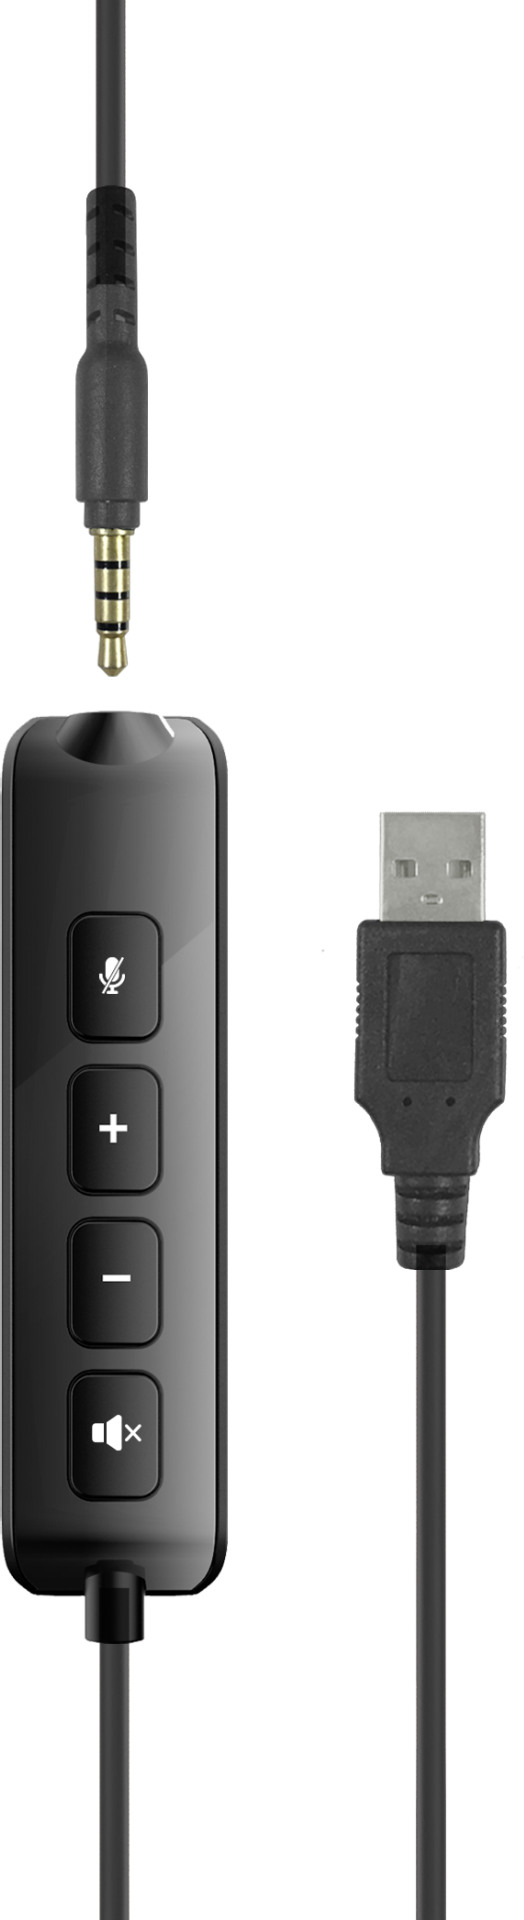 SPEEDLINK METIS USB Stereo Headset SL-870007-BK black, 3.5mm, USB Soundcard